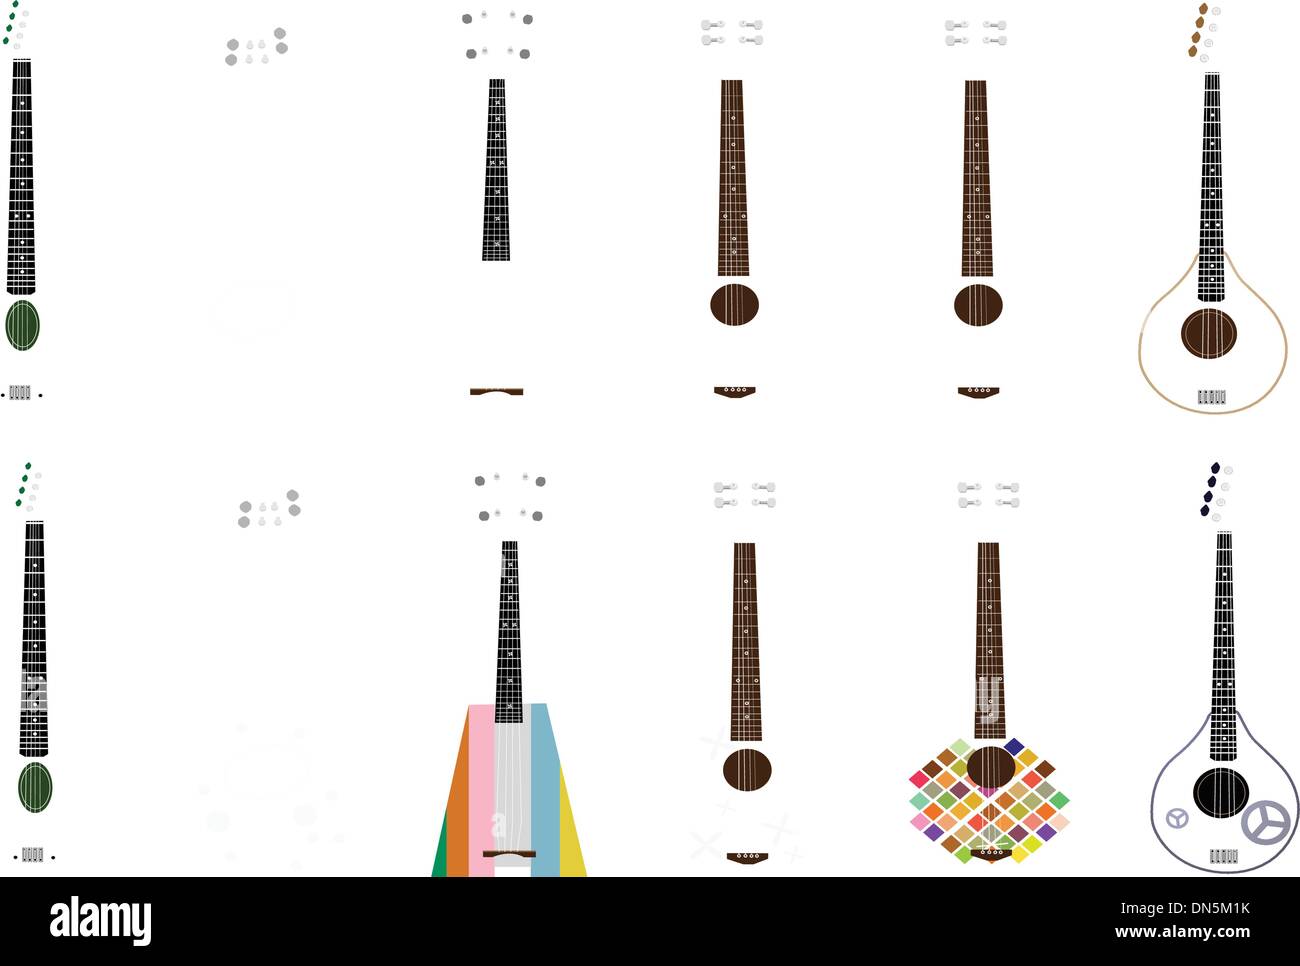 Eine Reihe von schönen Ukulele Gitarren auf weißem Hintergrund Stock Vektor